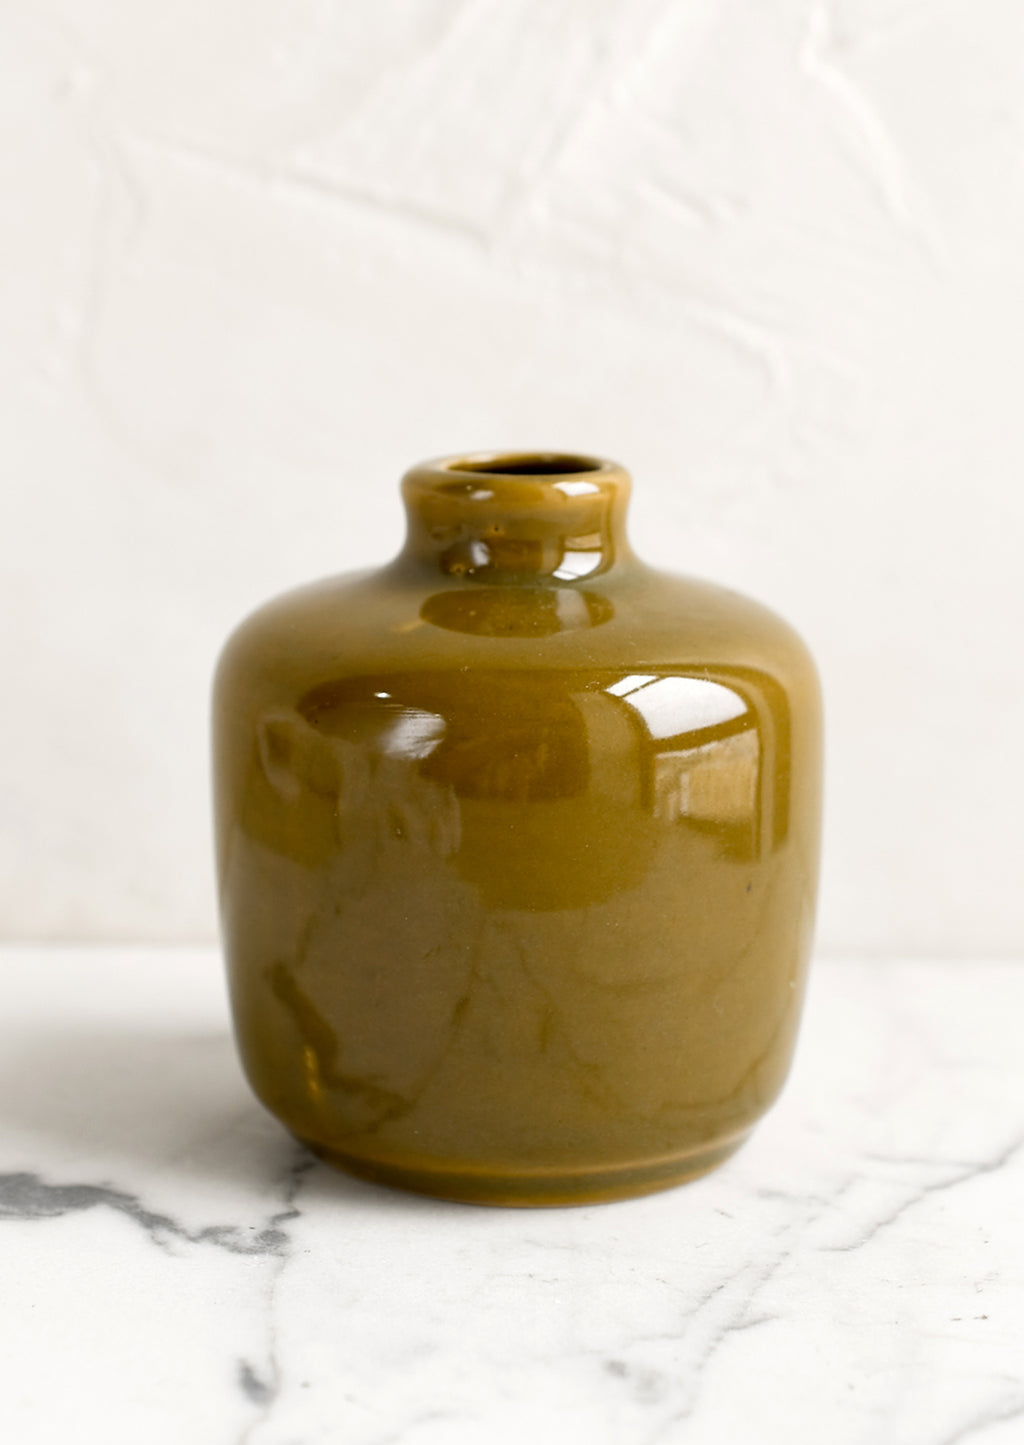 Short / Olive: A ceramic bud vase in short shape, olive color.